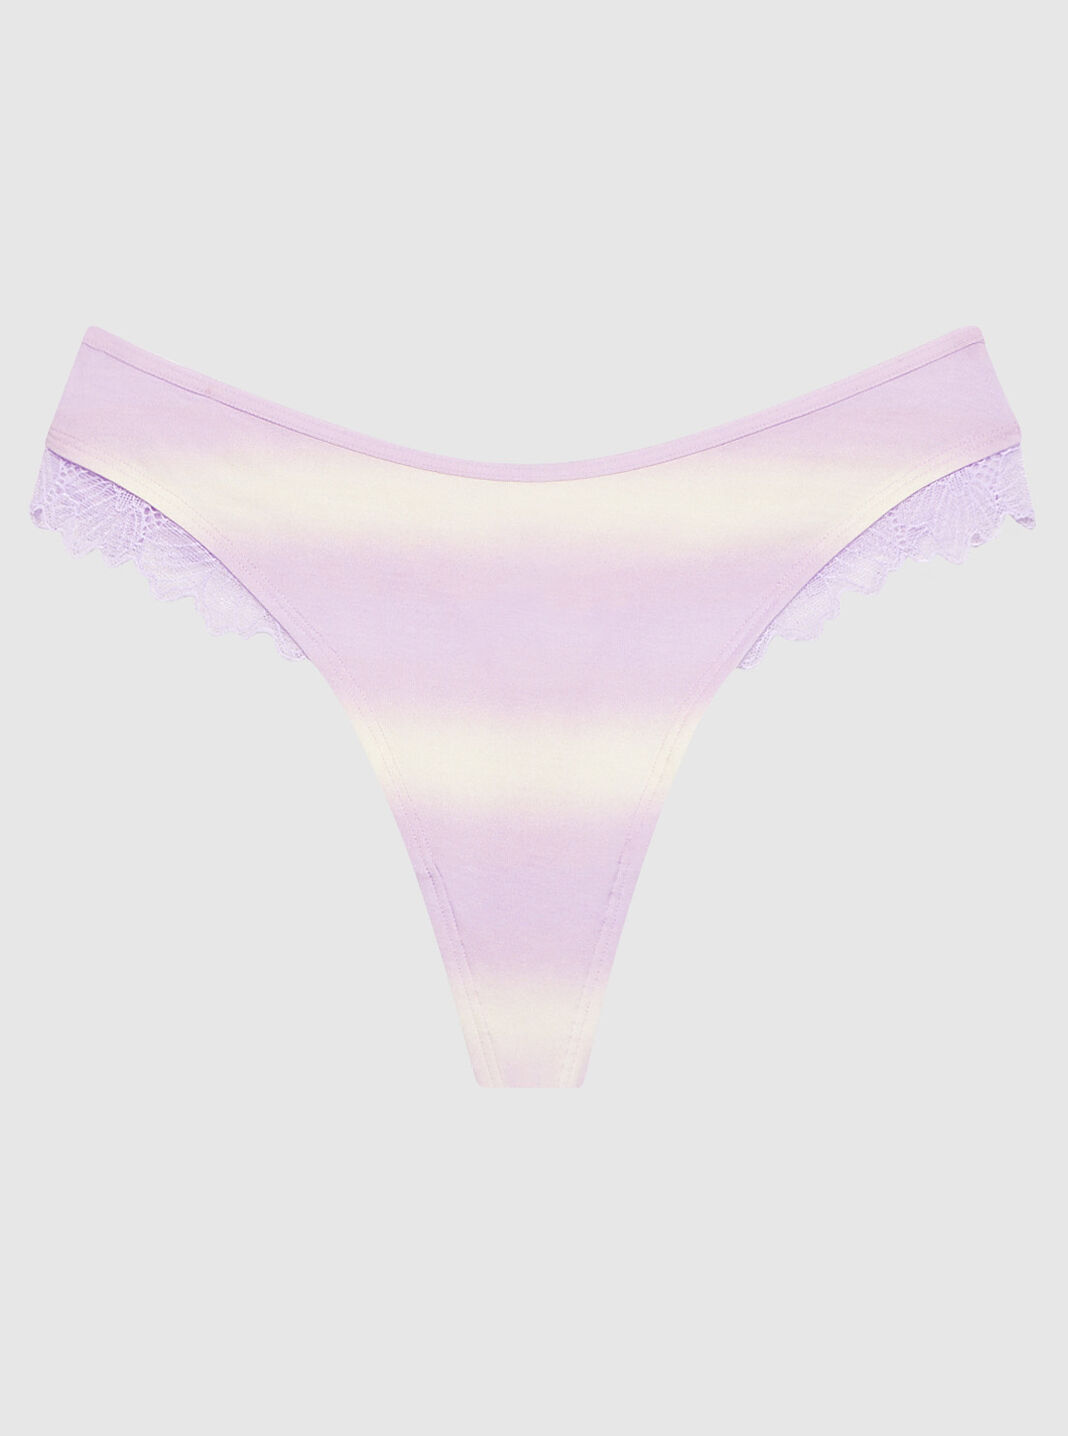 La Senza Lingerie Direct Mb Panties Medium Pop Pink: Buy Online at Best  Price in UAE 